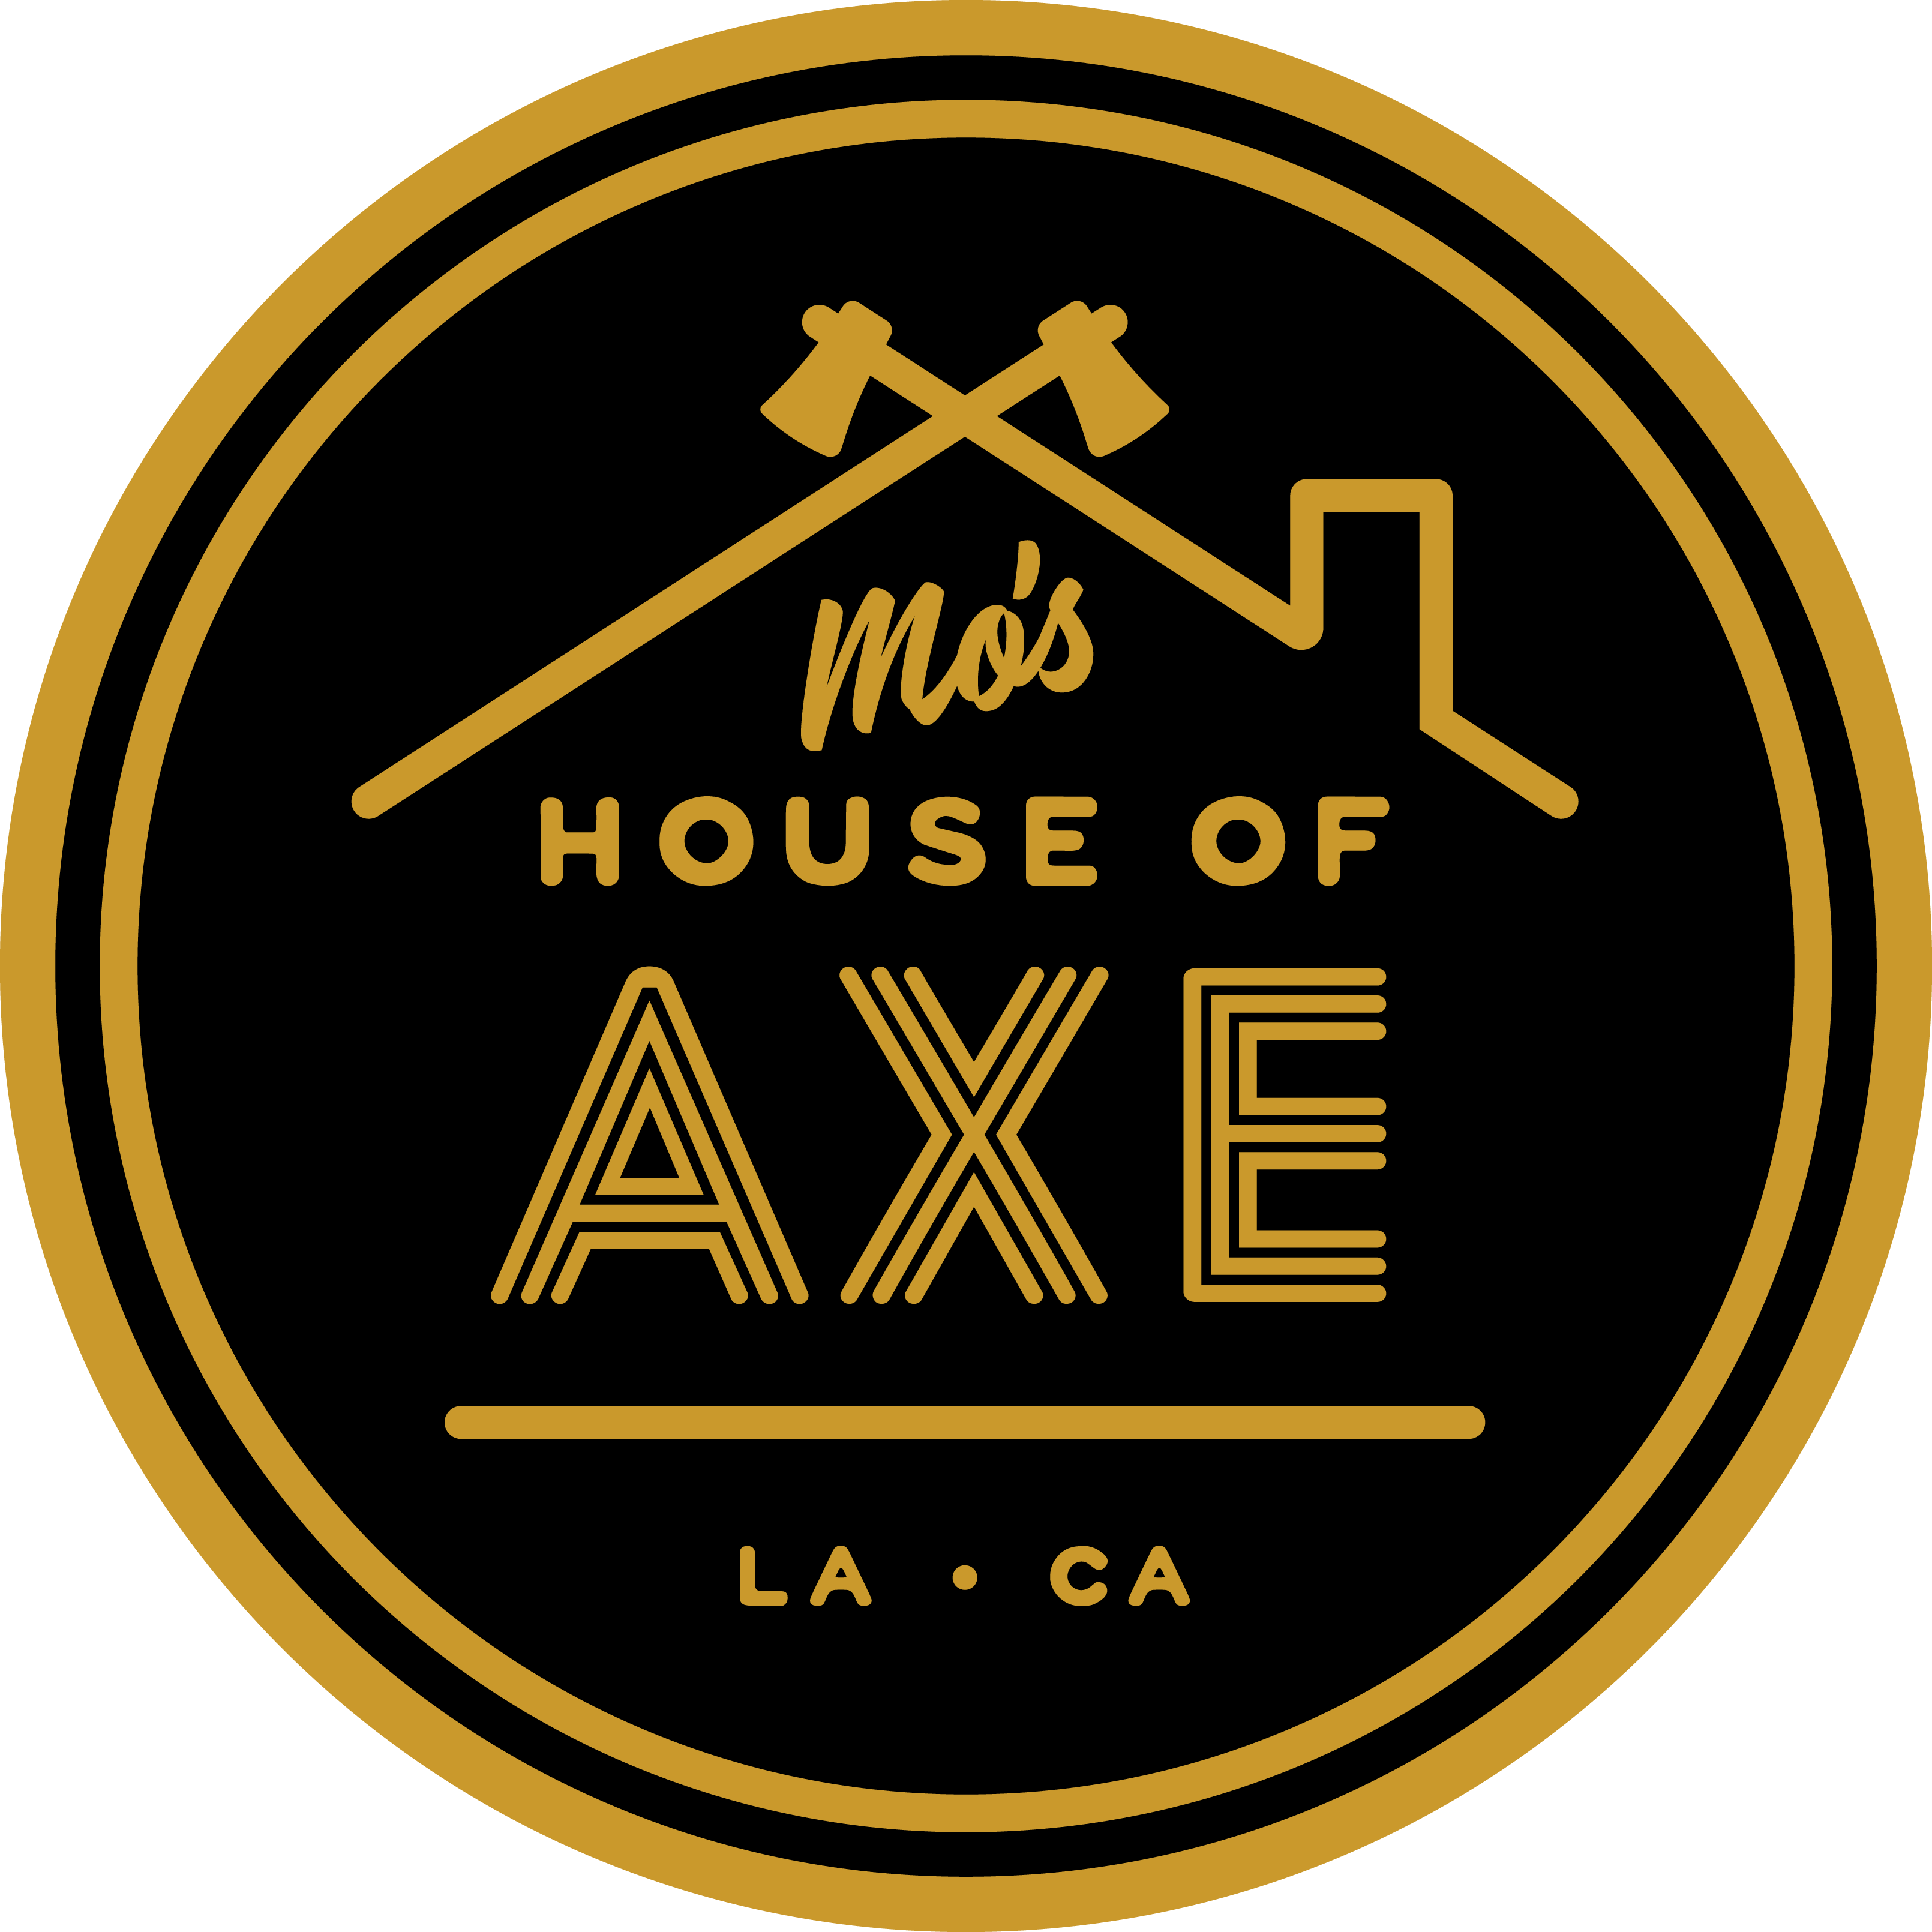 Mo's House of Axe - Axe throwing bar in Los Angeles logo